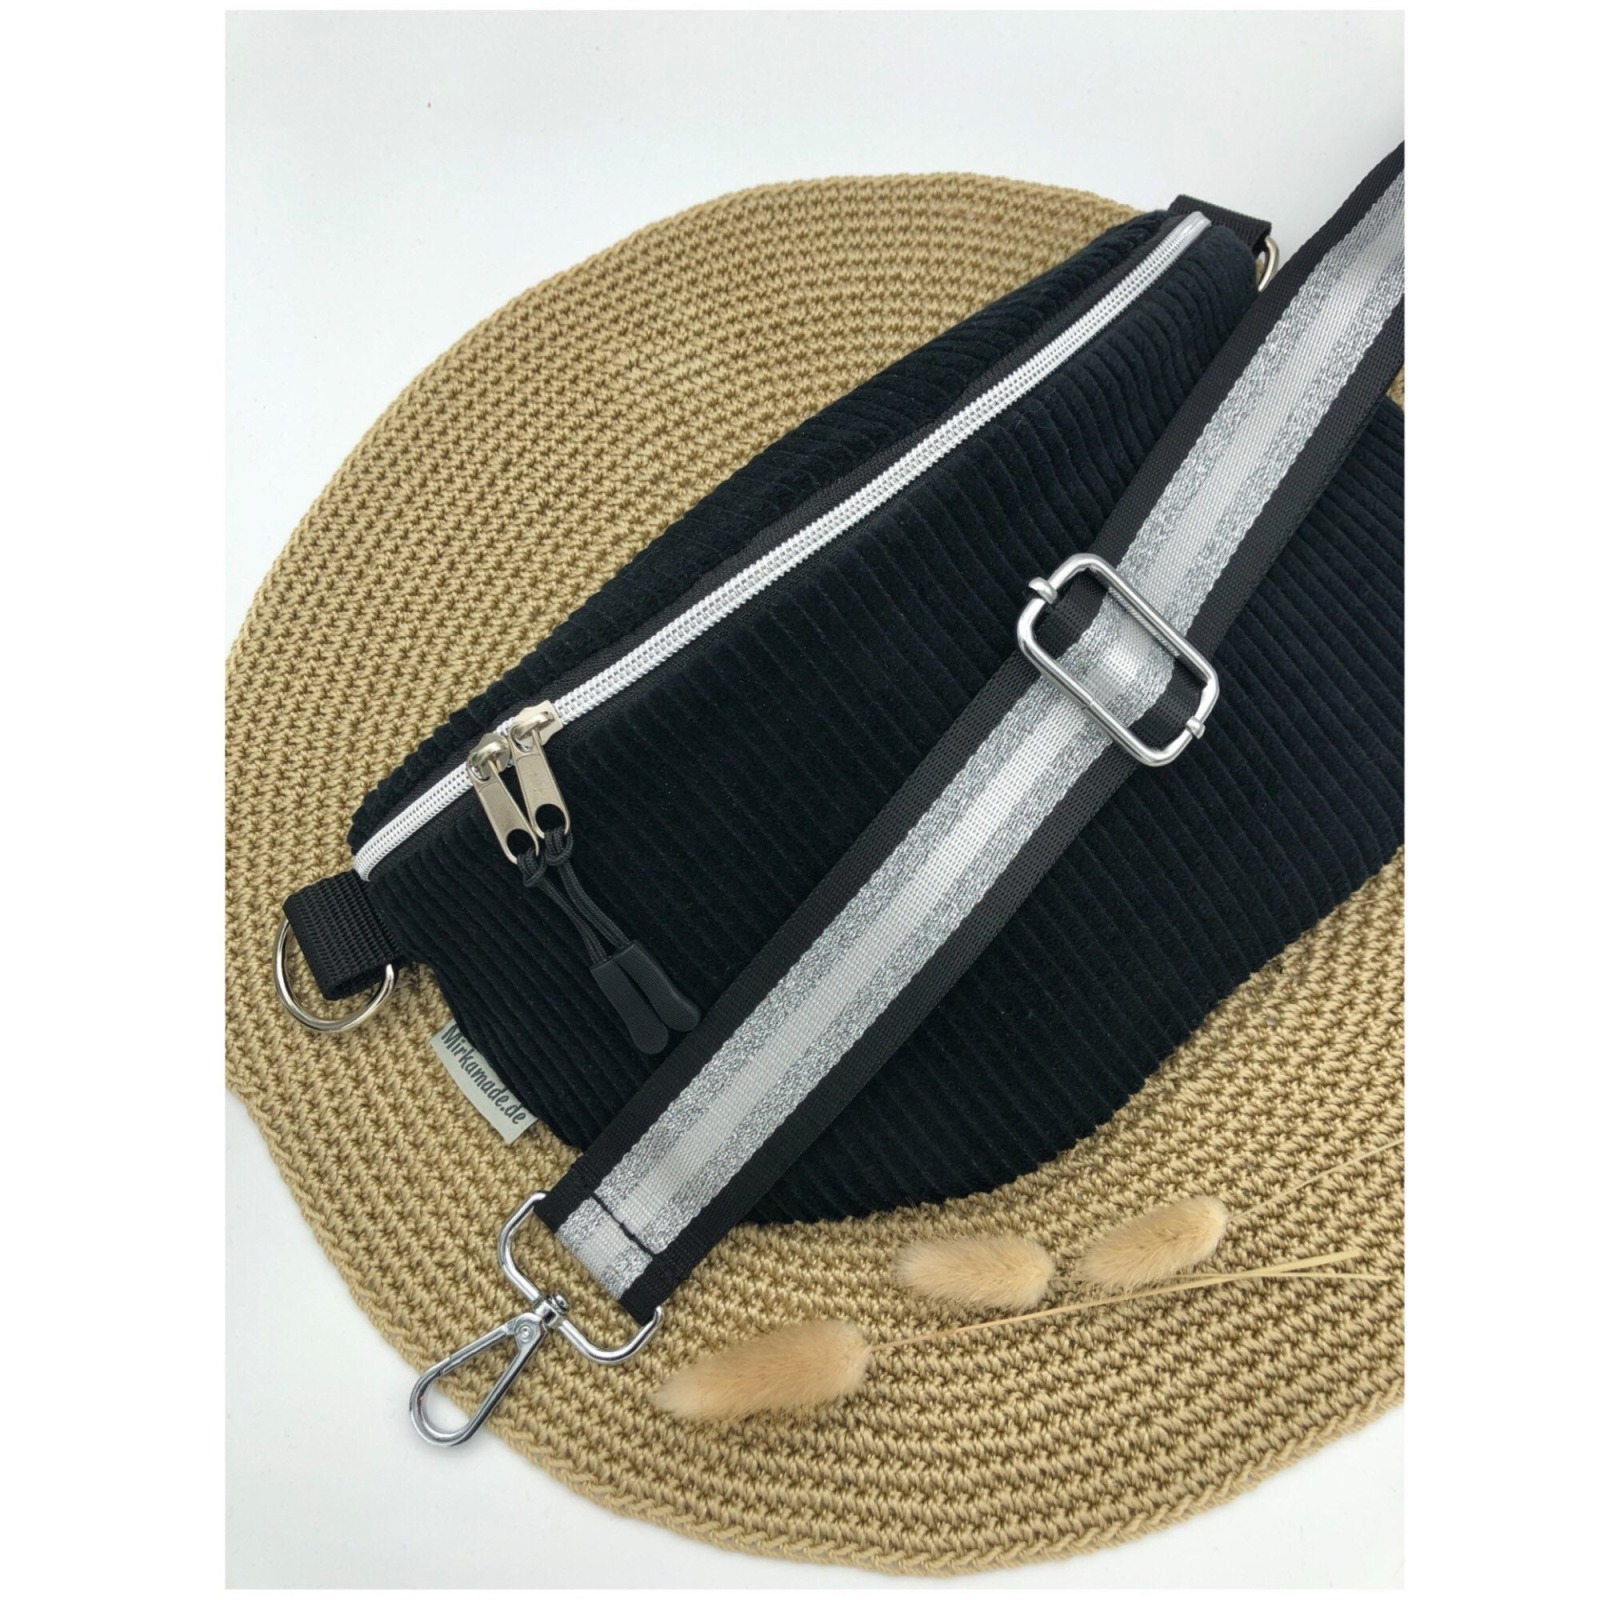 Bauchtasche Crossbag Cord schwarz mit Taschengurt gestreift schwarz/weiß/silber Hipbag leicht und